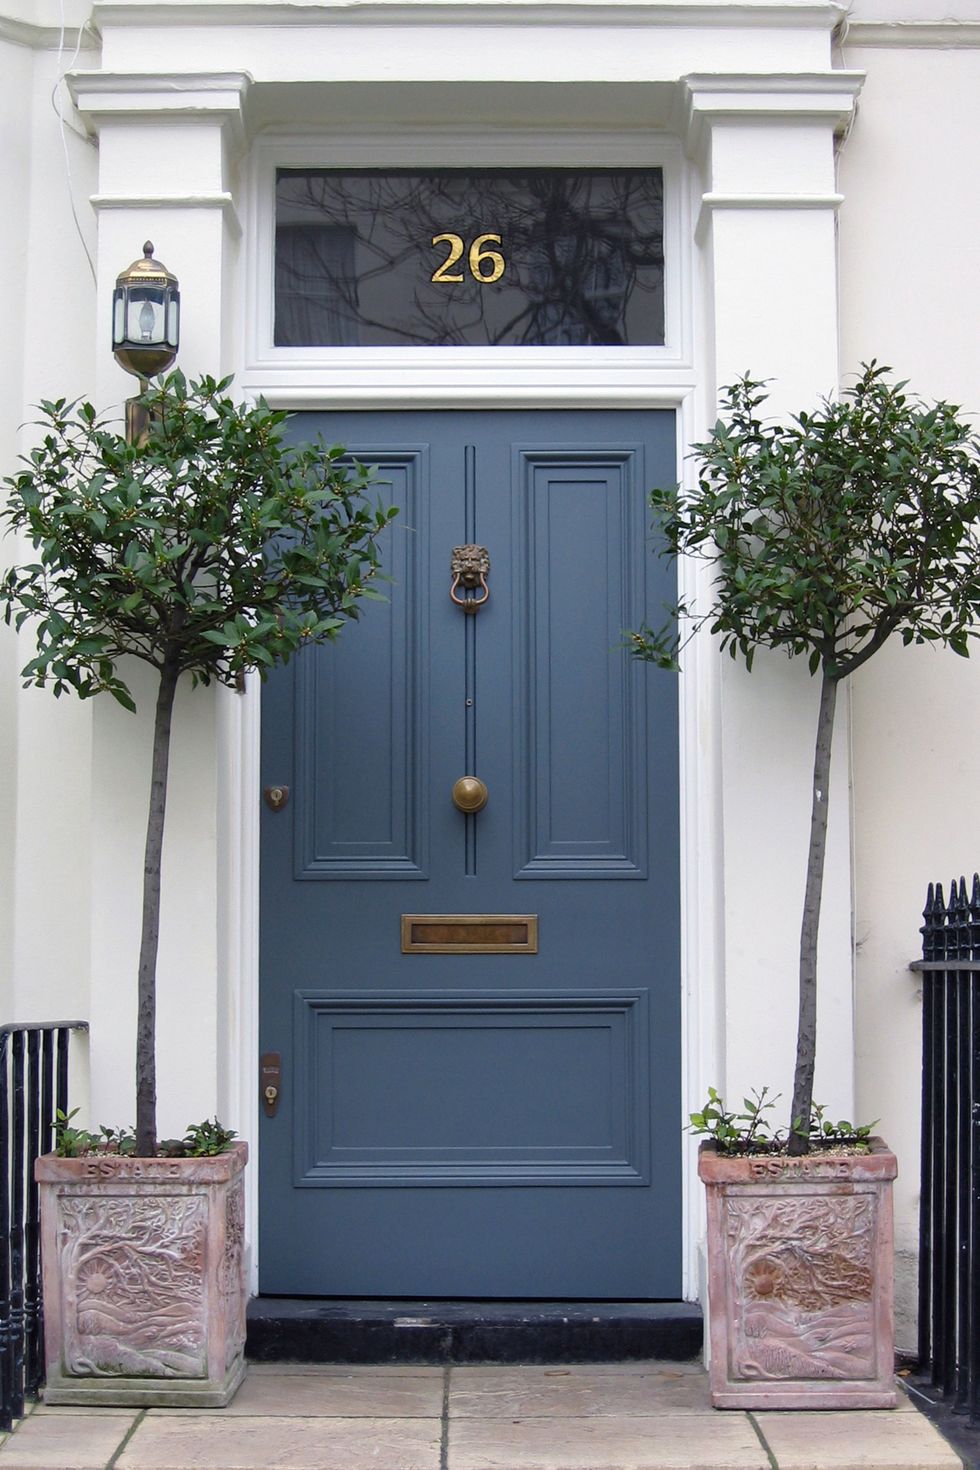 Door, Blue, Home door, Property, House, Facade, Building, Home, Architecture, Symmetry, 